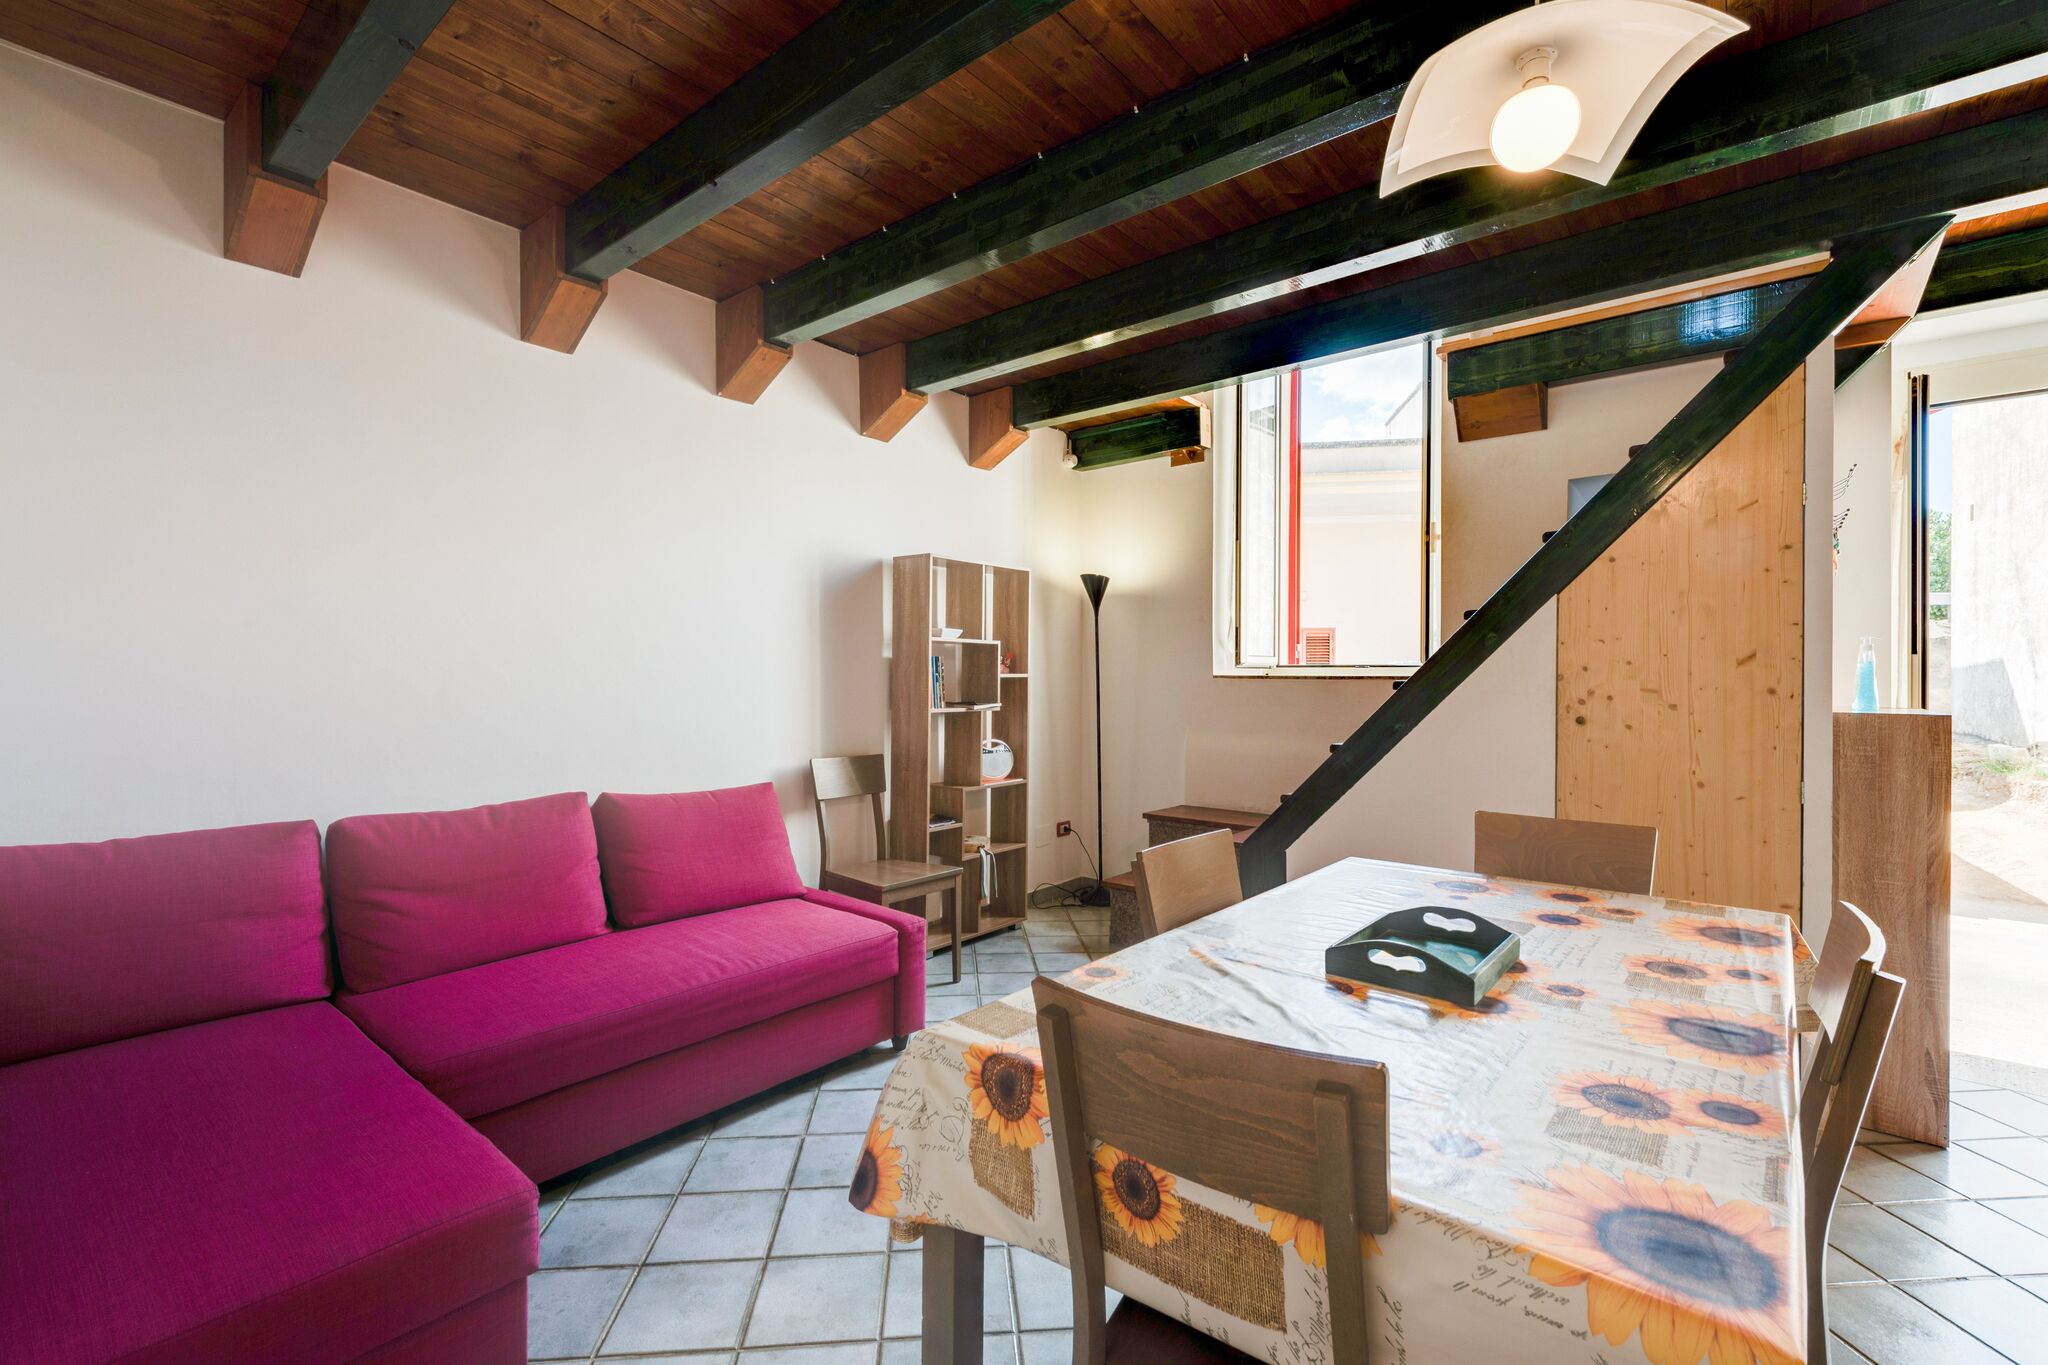 Maison de vacances simple à Muro Leccese avec balcon près de la mer